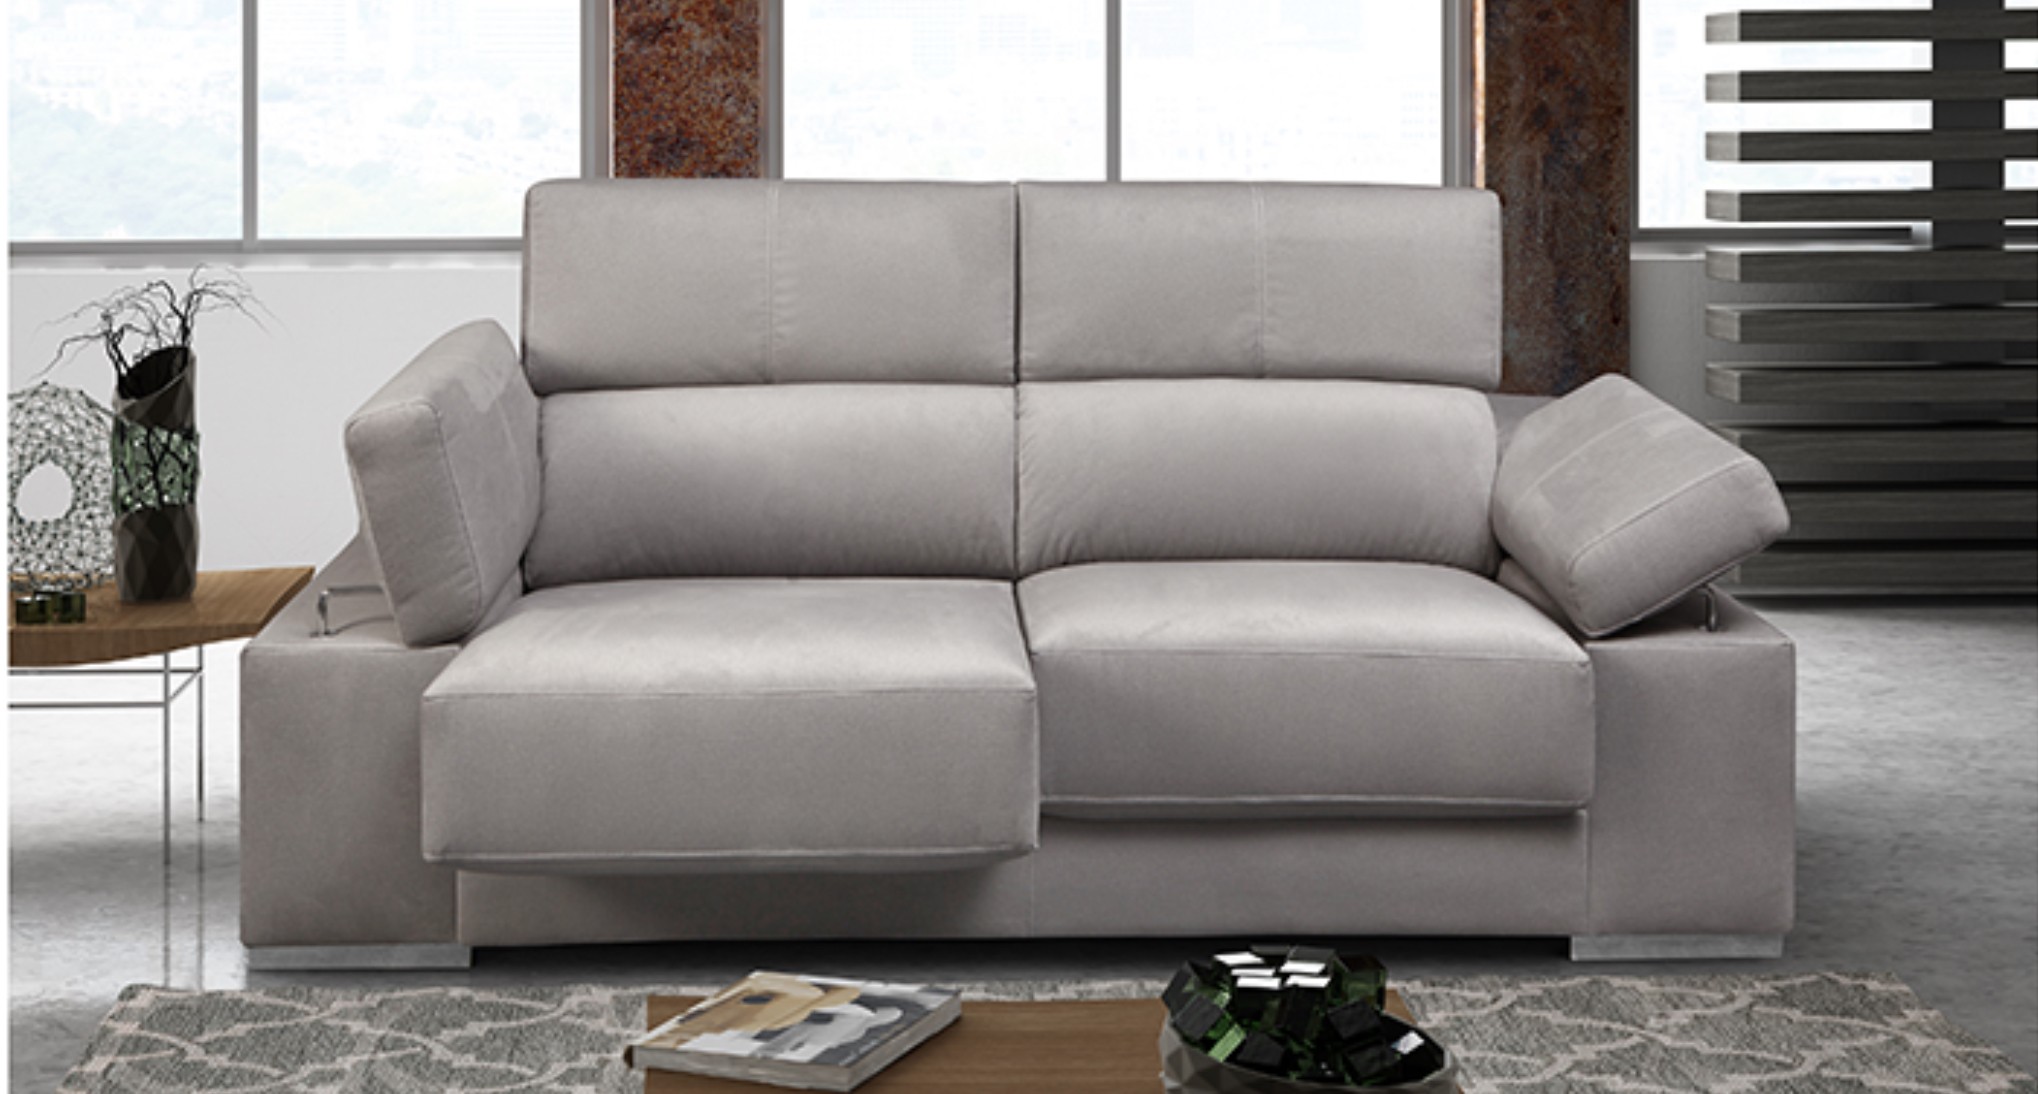 Sofa 2 plazas modelo milano telas promo